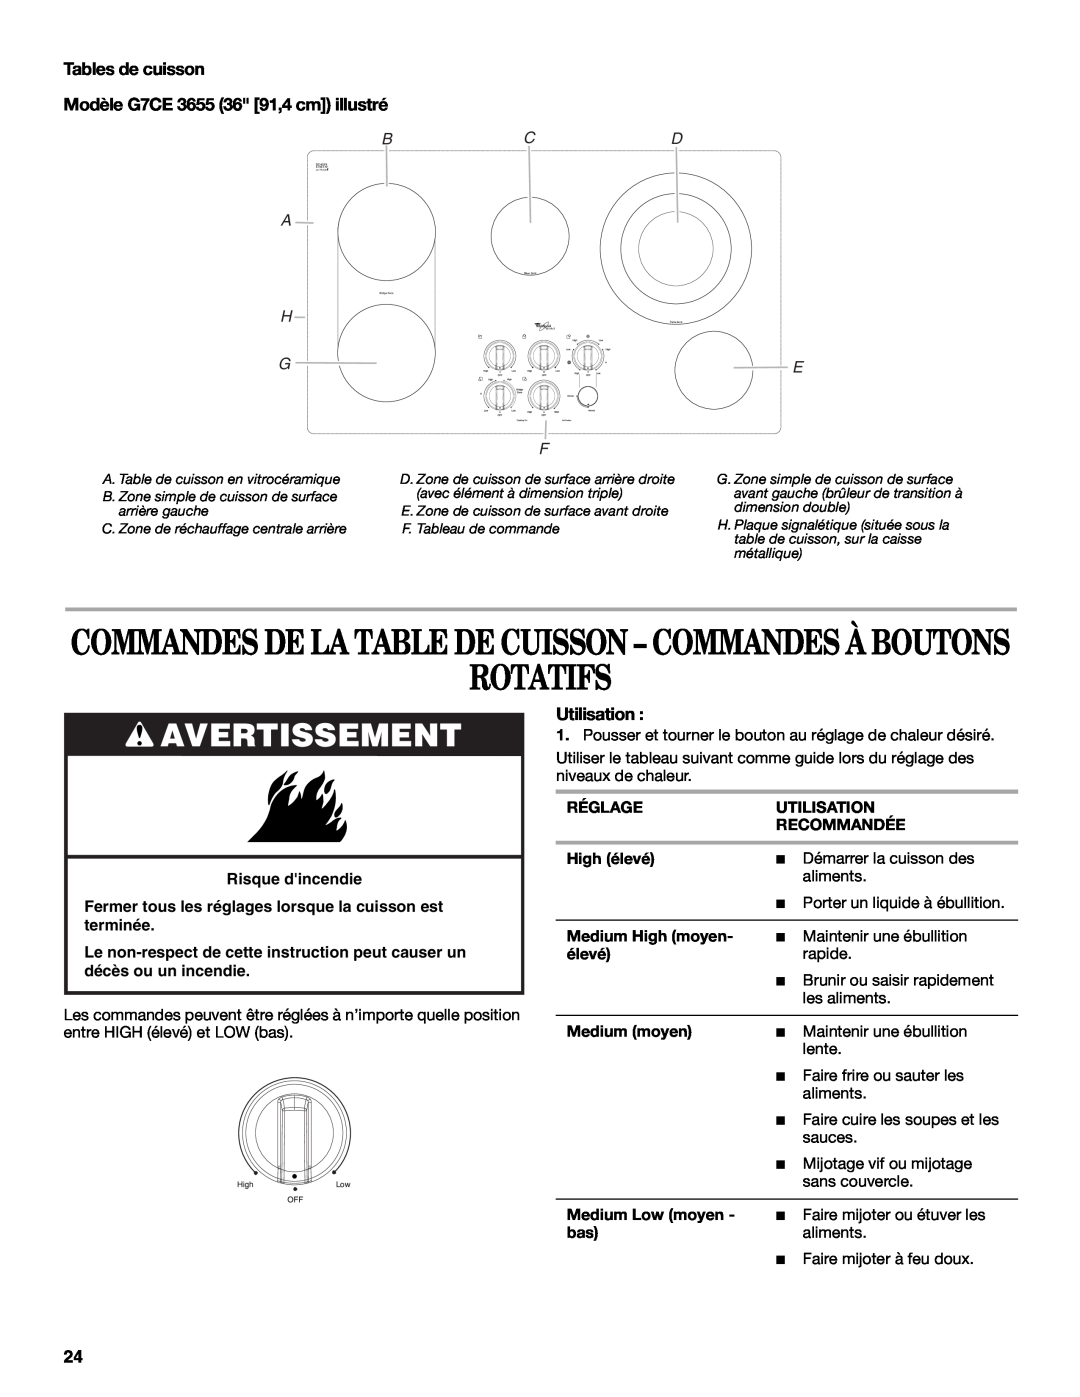 Whirlpool G9CE3675XB manual Rotatifs, Tables de cuisson, Modèle G7CE 3655 36 91,4 cm illustré, Bcd A H G, Avertissement 